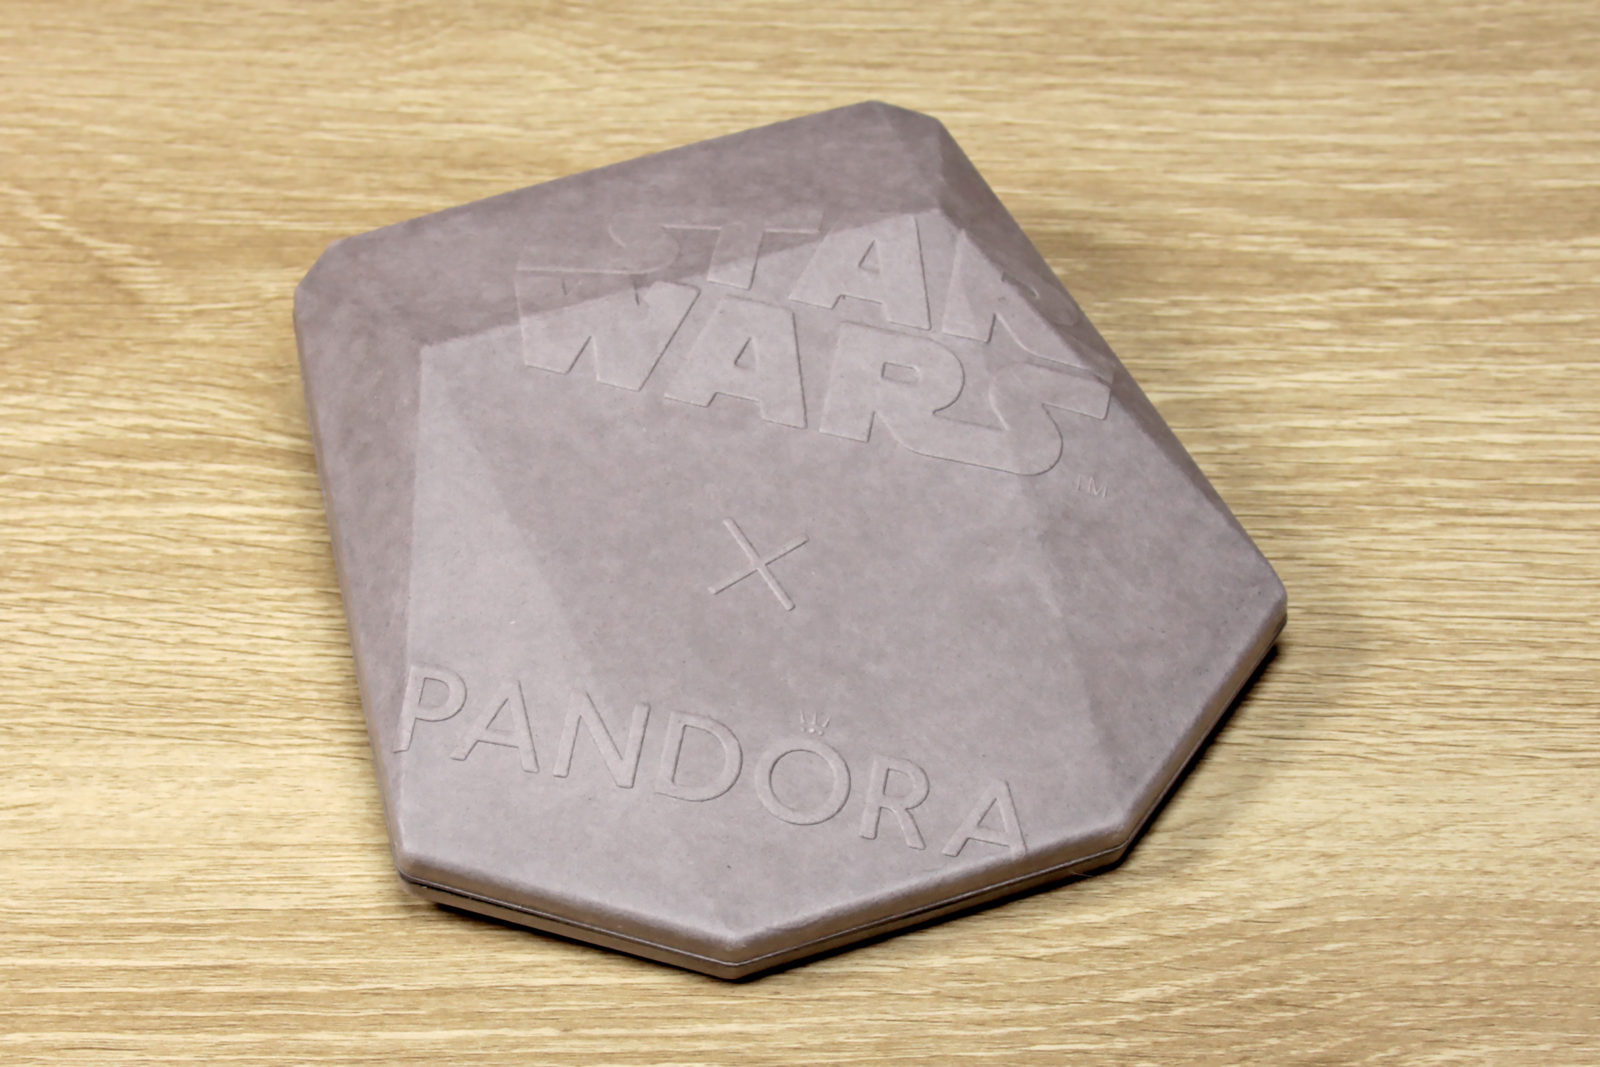 Pandora x Star Wars - Mandalorian Collection